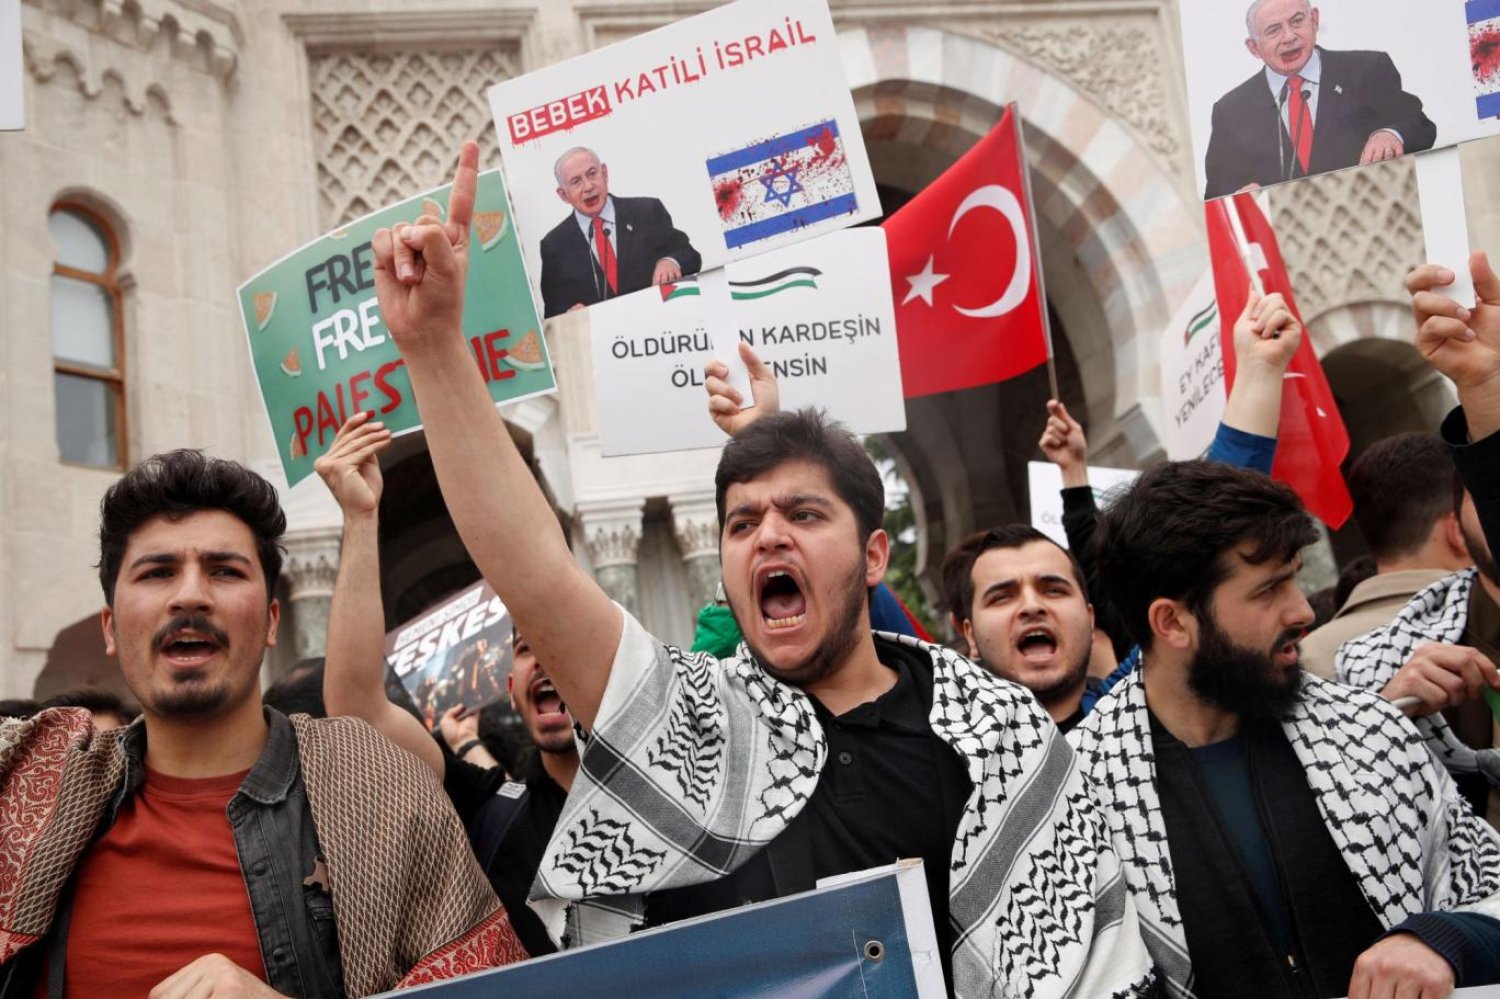 The Economist, konuyla ilgili haberinde "Dindar seçmenler, Cumhurbaşkanı'nın İsrail meselesiyle ilgili yeterince sert davranmadığını düşünüyor" ifadesini kullanmıştı (Reuters)